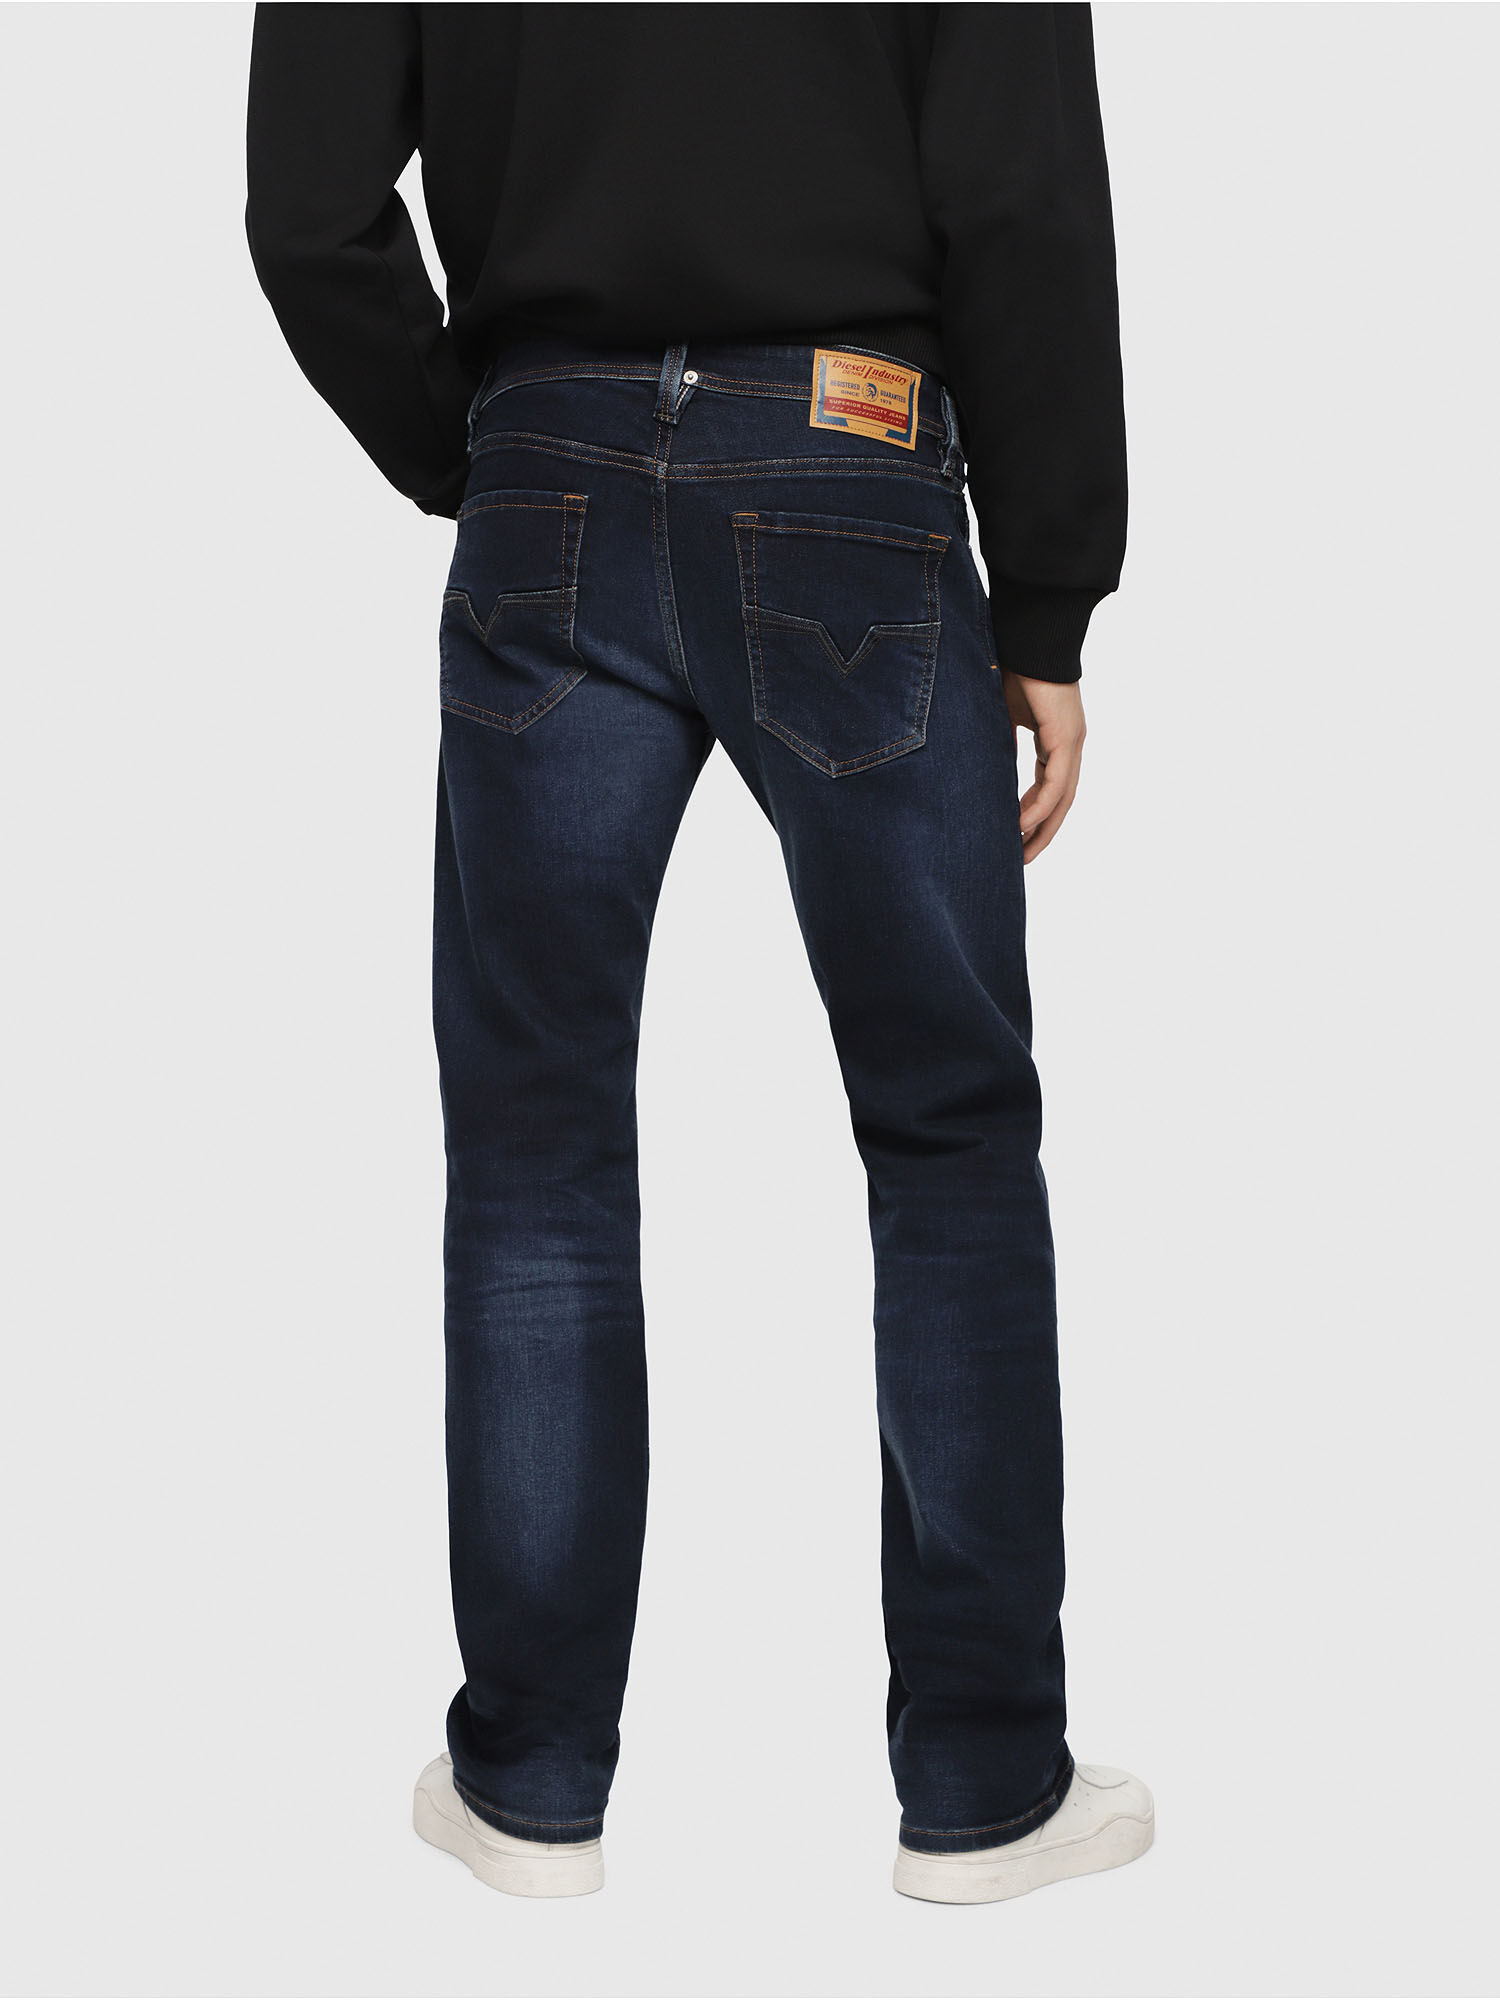 topshop black joni jeans